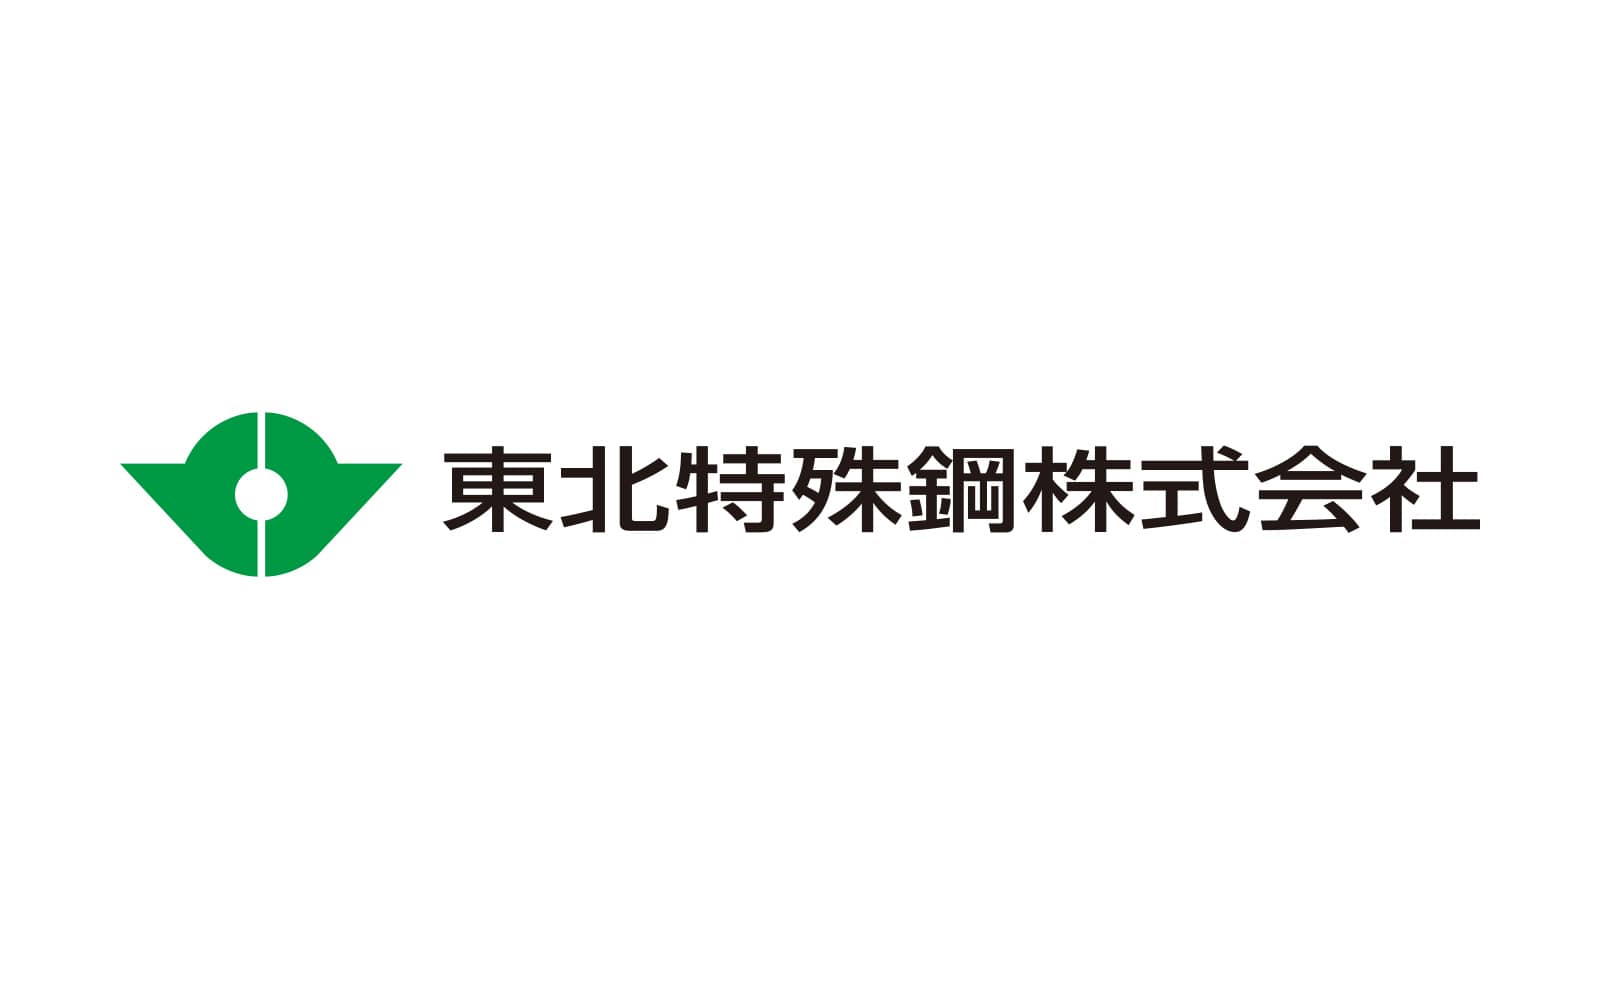 Tohoku Steel Co., Ltd.